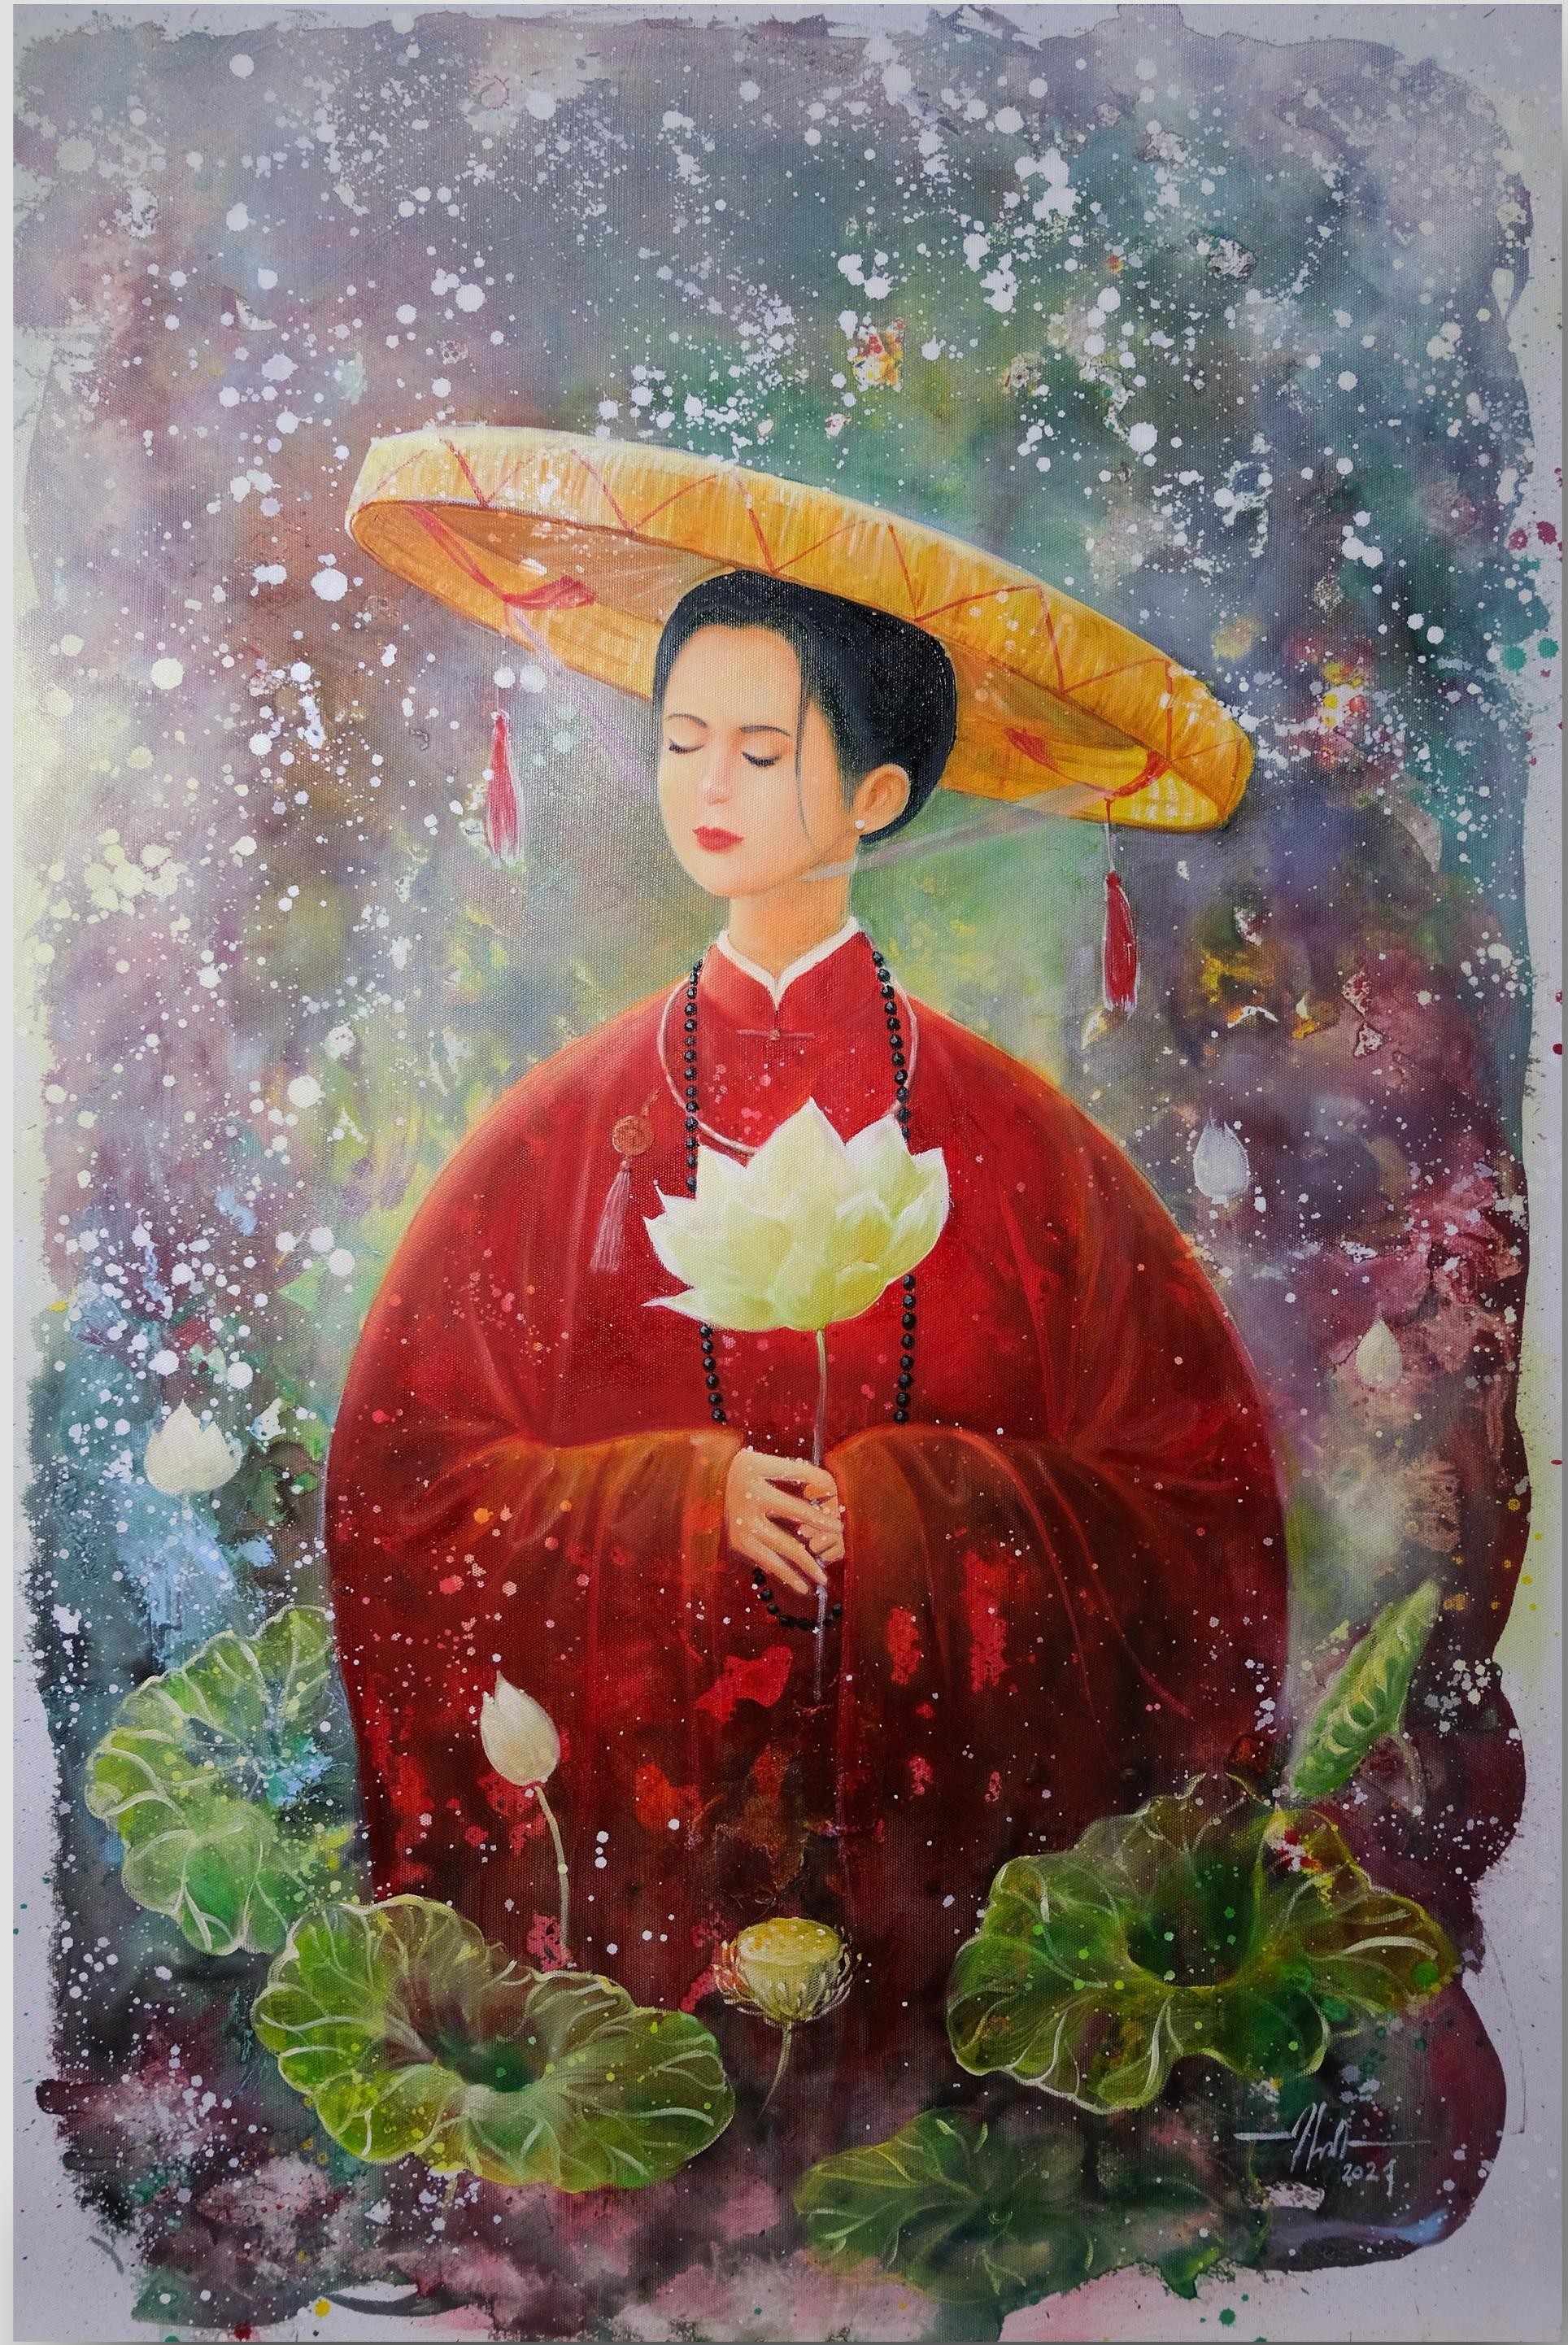 Bộ tranh thiếu nữ và hoa sen làm mê đắm lòng người của chàng họa sĩ Bắc Giang ảnh 2